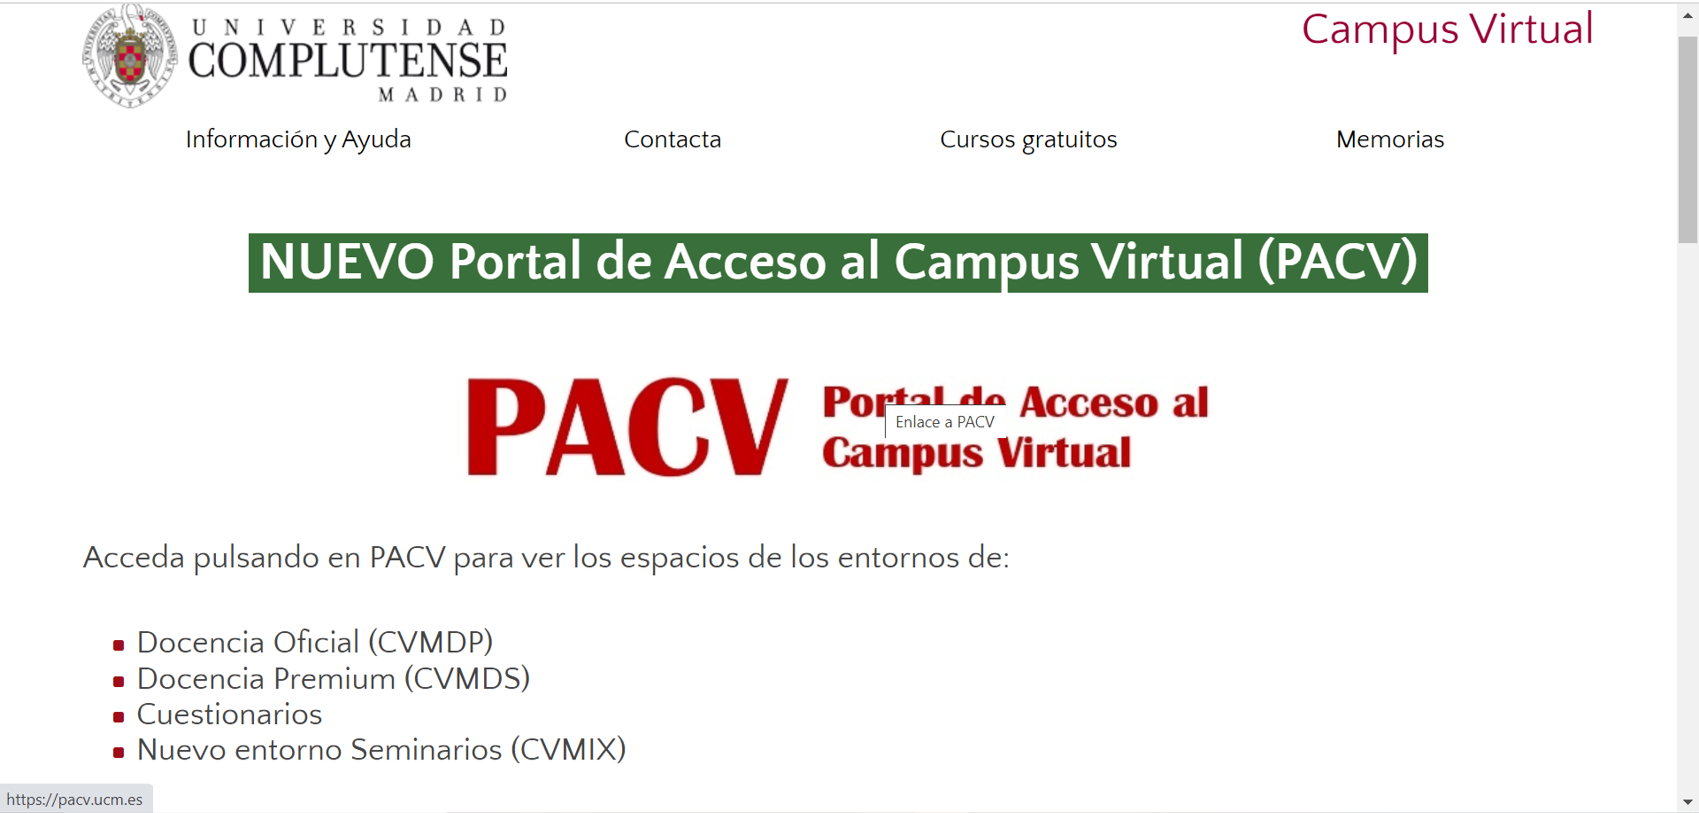 Más información sobre el nuevo Portal de Acceso al Campus Virtual PACV2